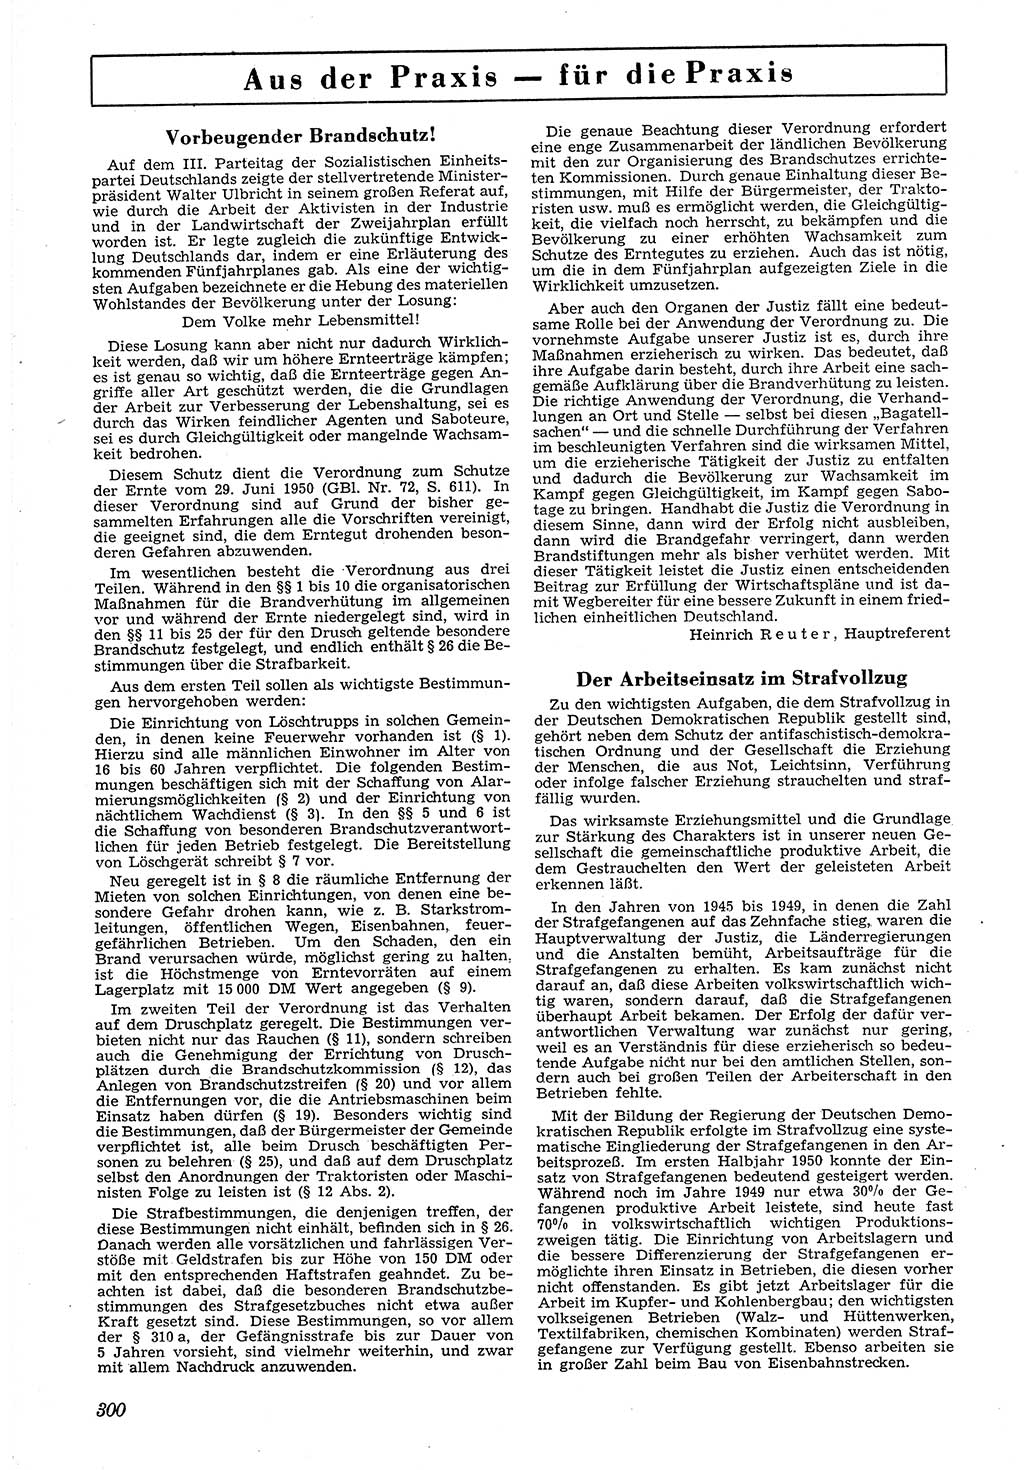 Neue Justiz (NJ), Zeitschrift für Recht und Rechtswissenschaft [Deutsche Demokratische Republik (DDR)], 4. Jahrgang 1950, Seite 300 (NJ DDR 1950, S. 300)